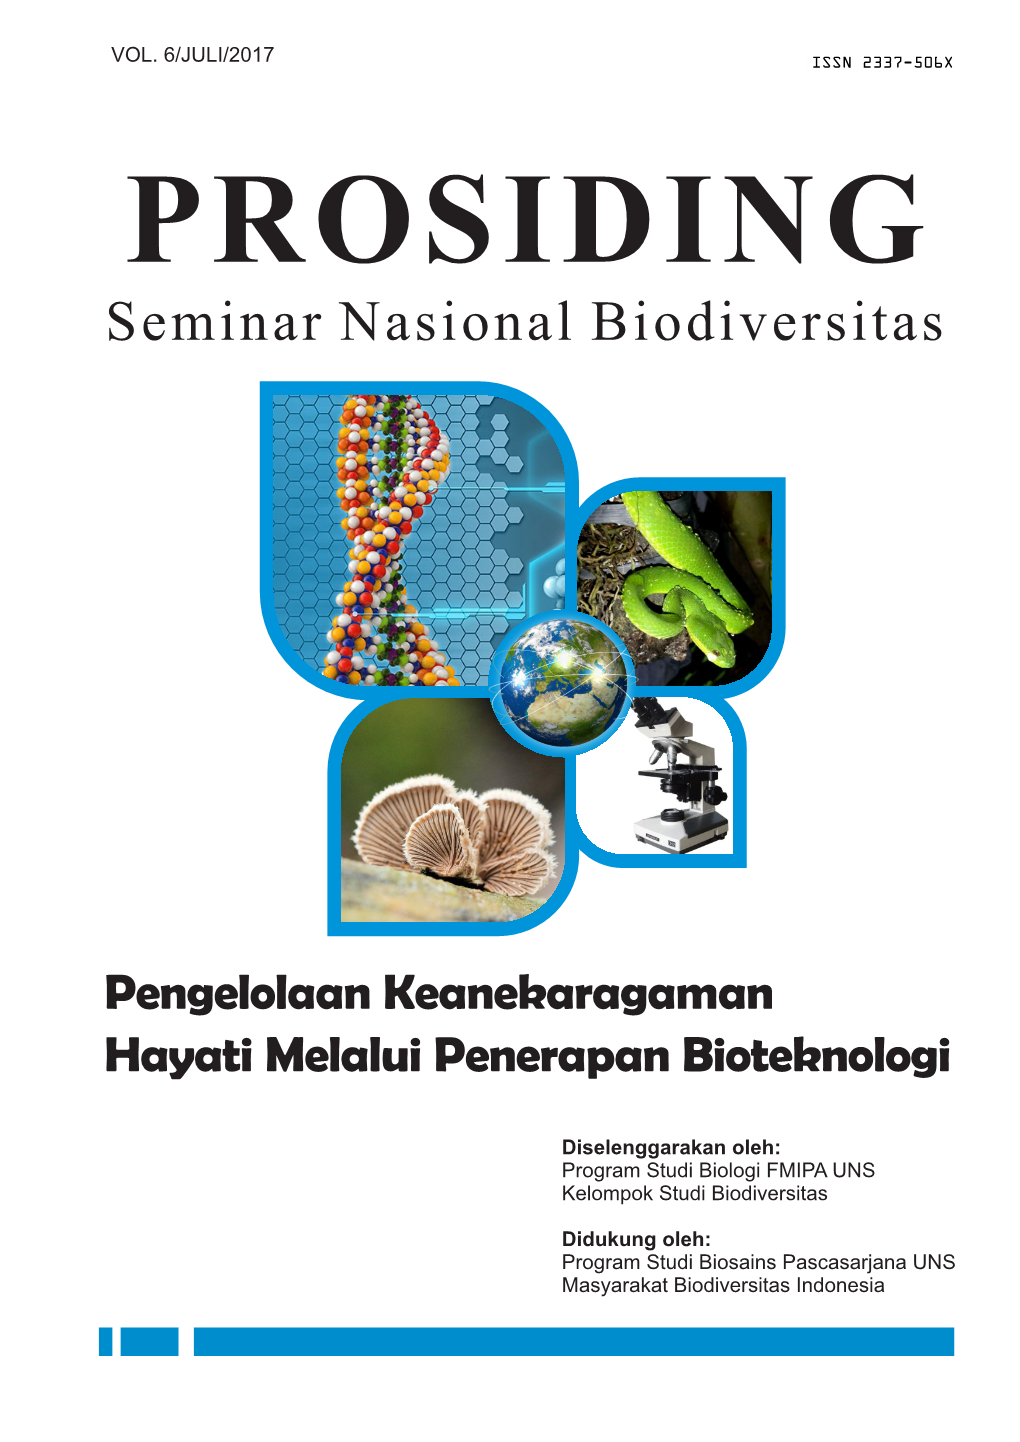 Seminar Nasional Biodiversitas